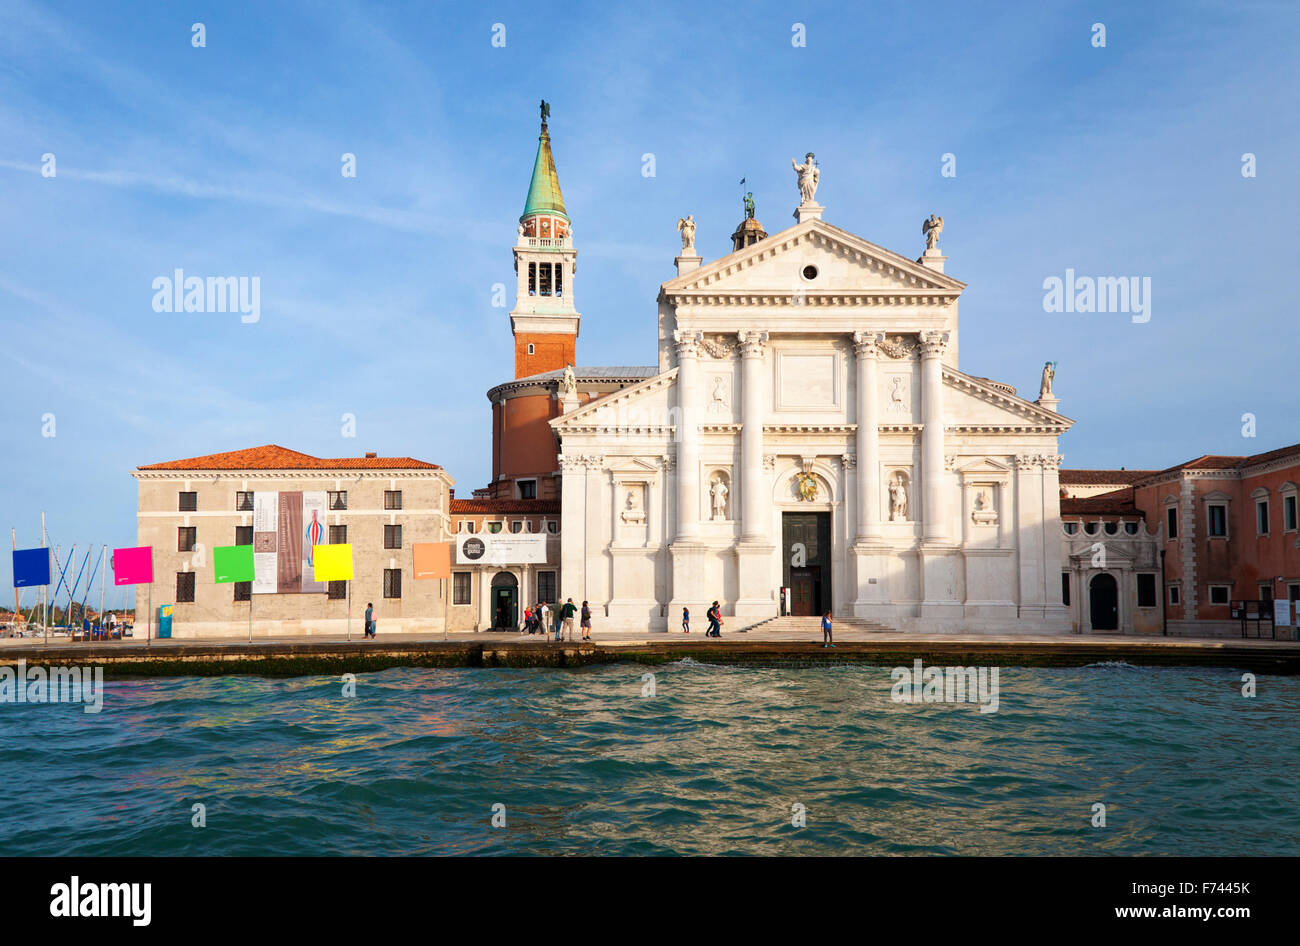 Chiesa San Giorgio Maggiore on Isola di San Giorgio Maggiore, Venice, Italy Stock Photo